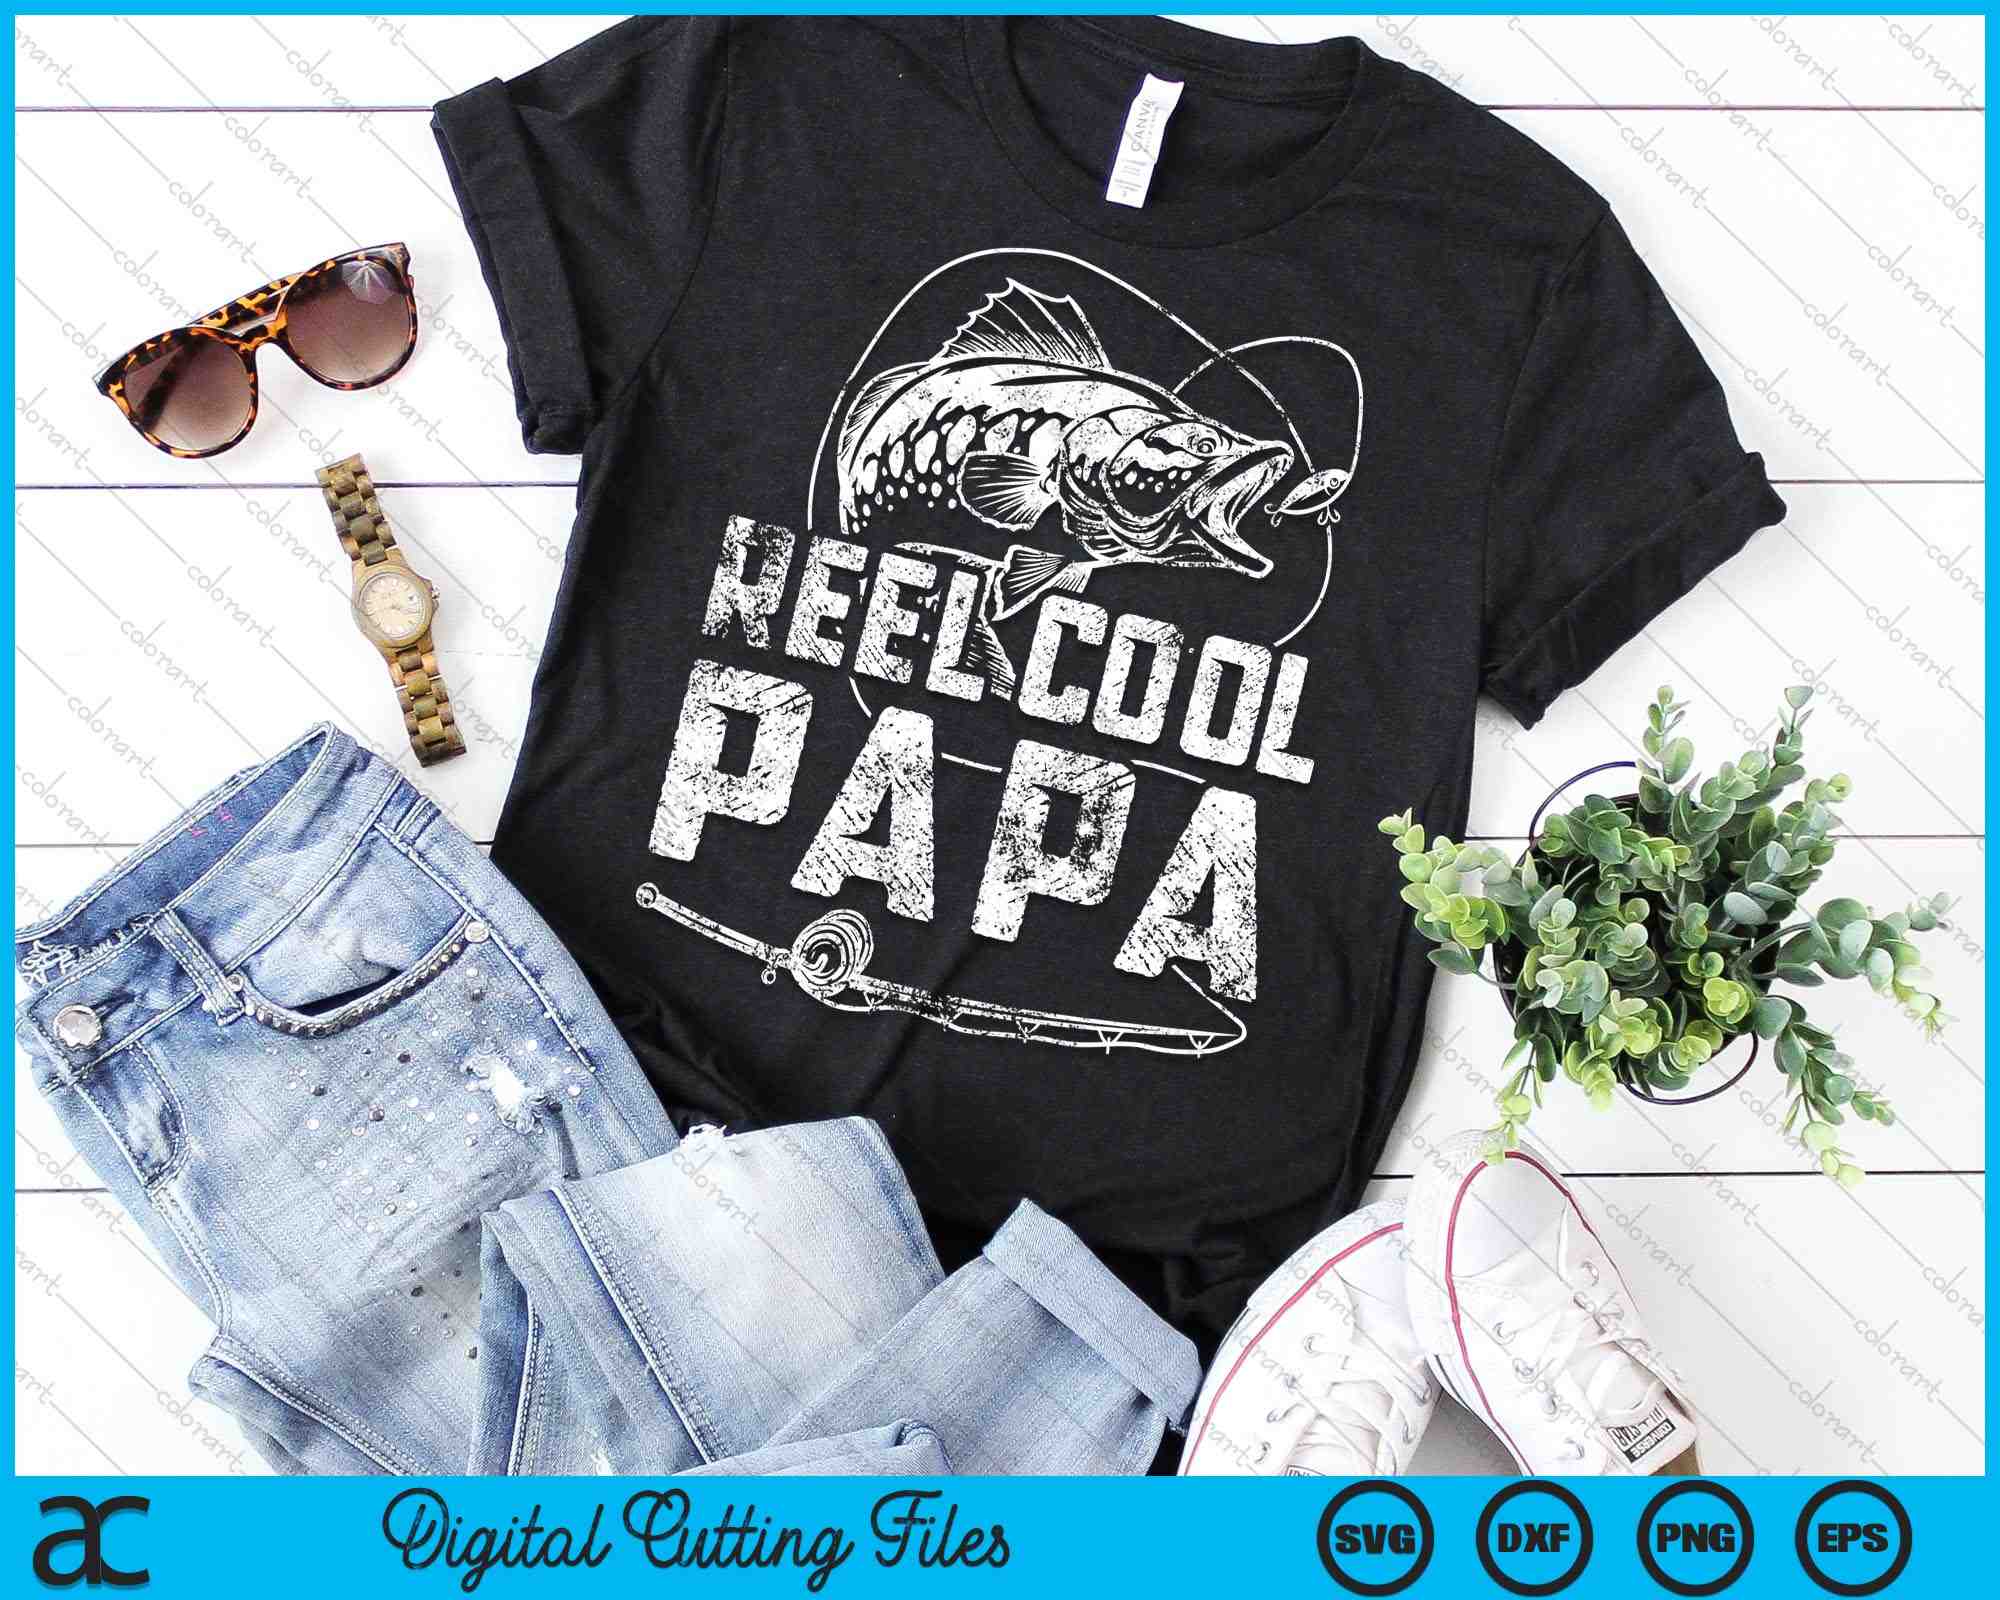 Men's Reel Cool Papa Fish T-Shirt Fishing SVG